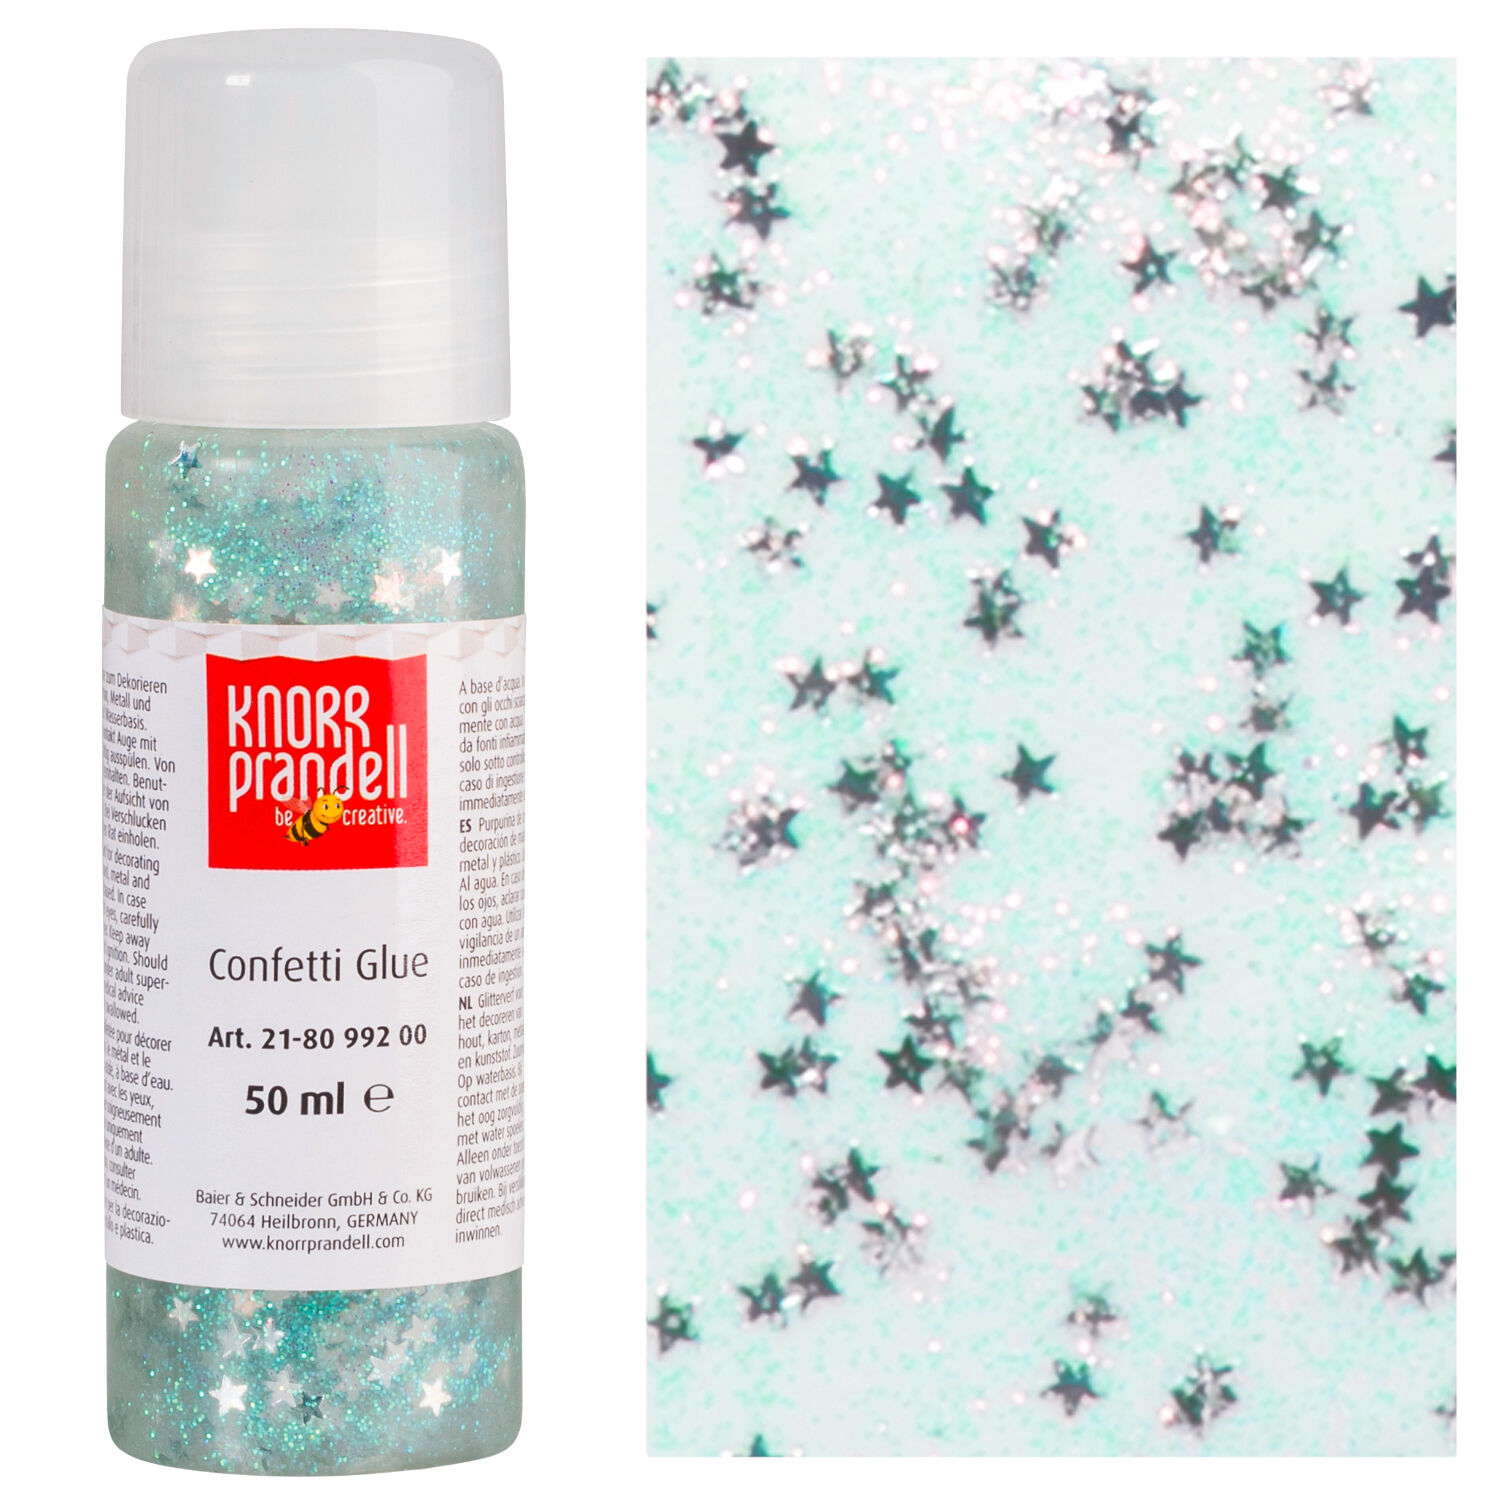 NEU Glitterfarbe Confetti Glue, mit Linerspitze, 50 ml, Silberne Sterne